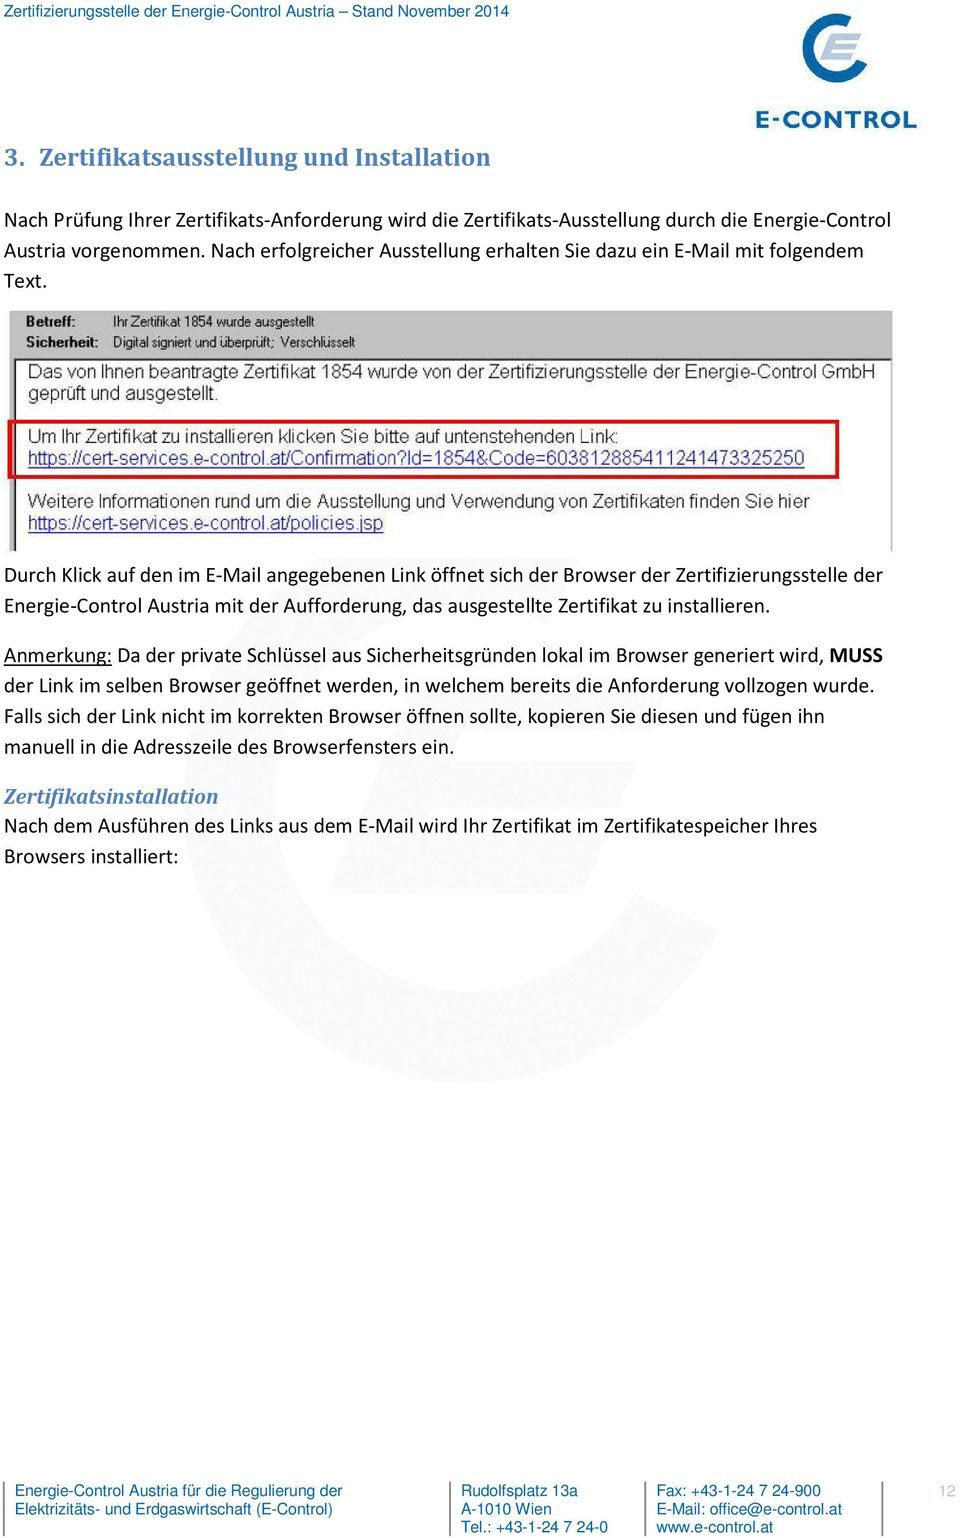 Durch Klick auf den im E-Mail angegebenen Link öffnet sich der Browser der Zertifizierungsstelle der Energie-Control Austria mit der Aufforderung, das ausgestellte Zertifikat zu installieren.